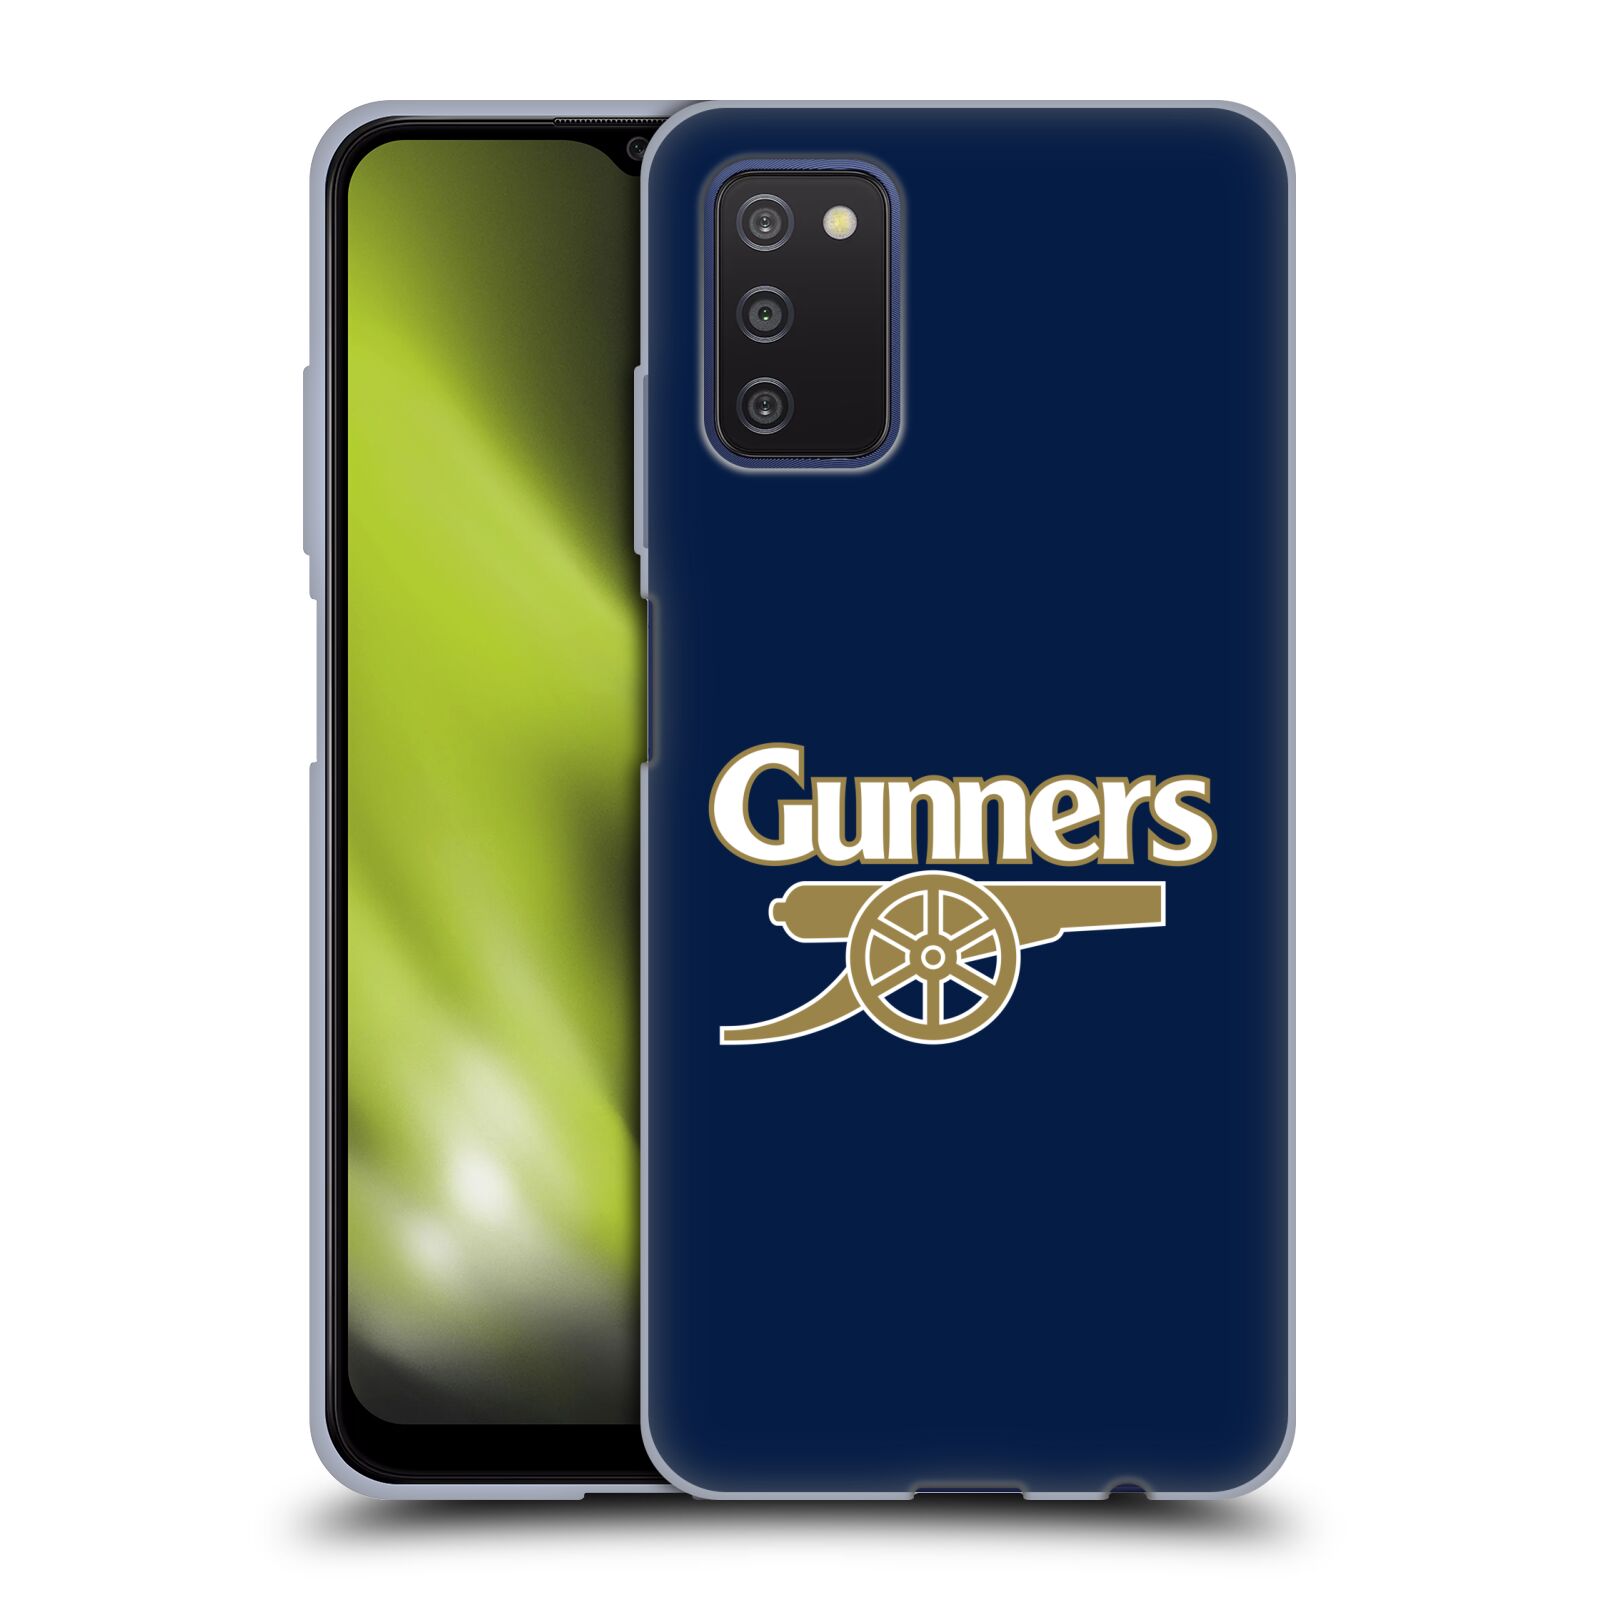 Silikonové pouzdro na mobil Samsung Galaxy A03s - Head Case - Arsenal FC - Gunners